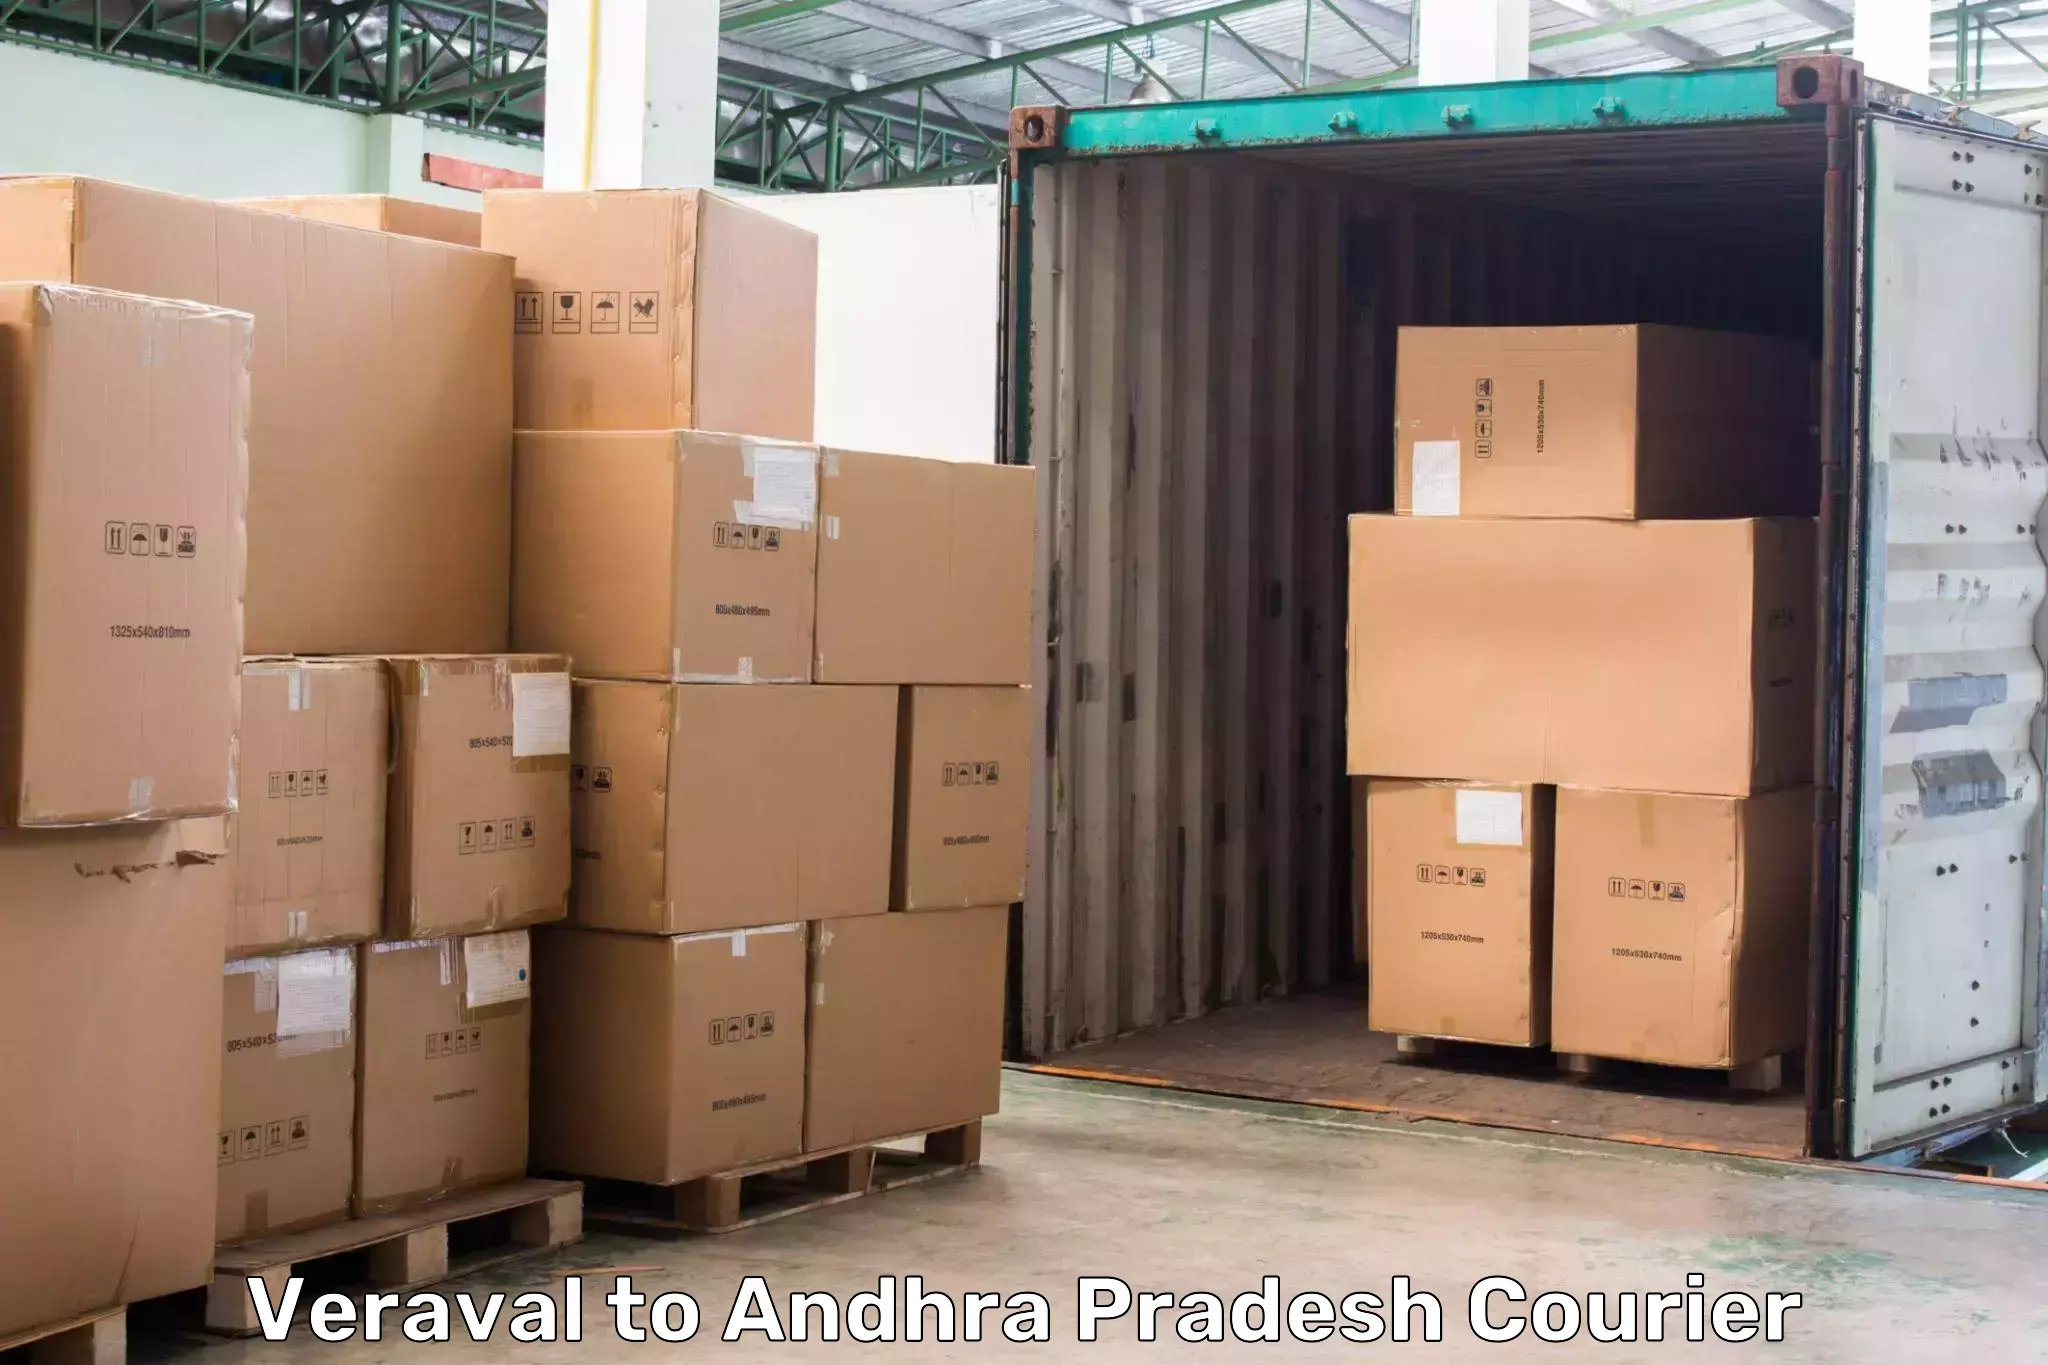 Nationwide parcel services Veraval to Galiveedu